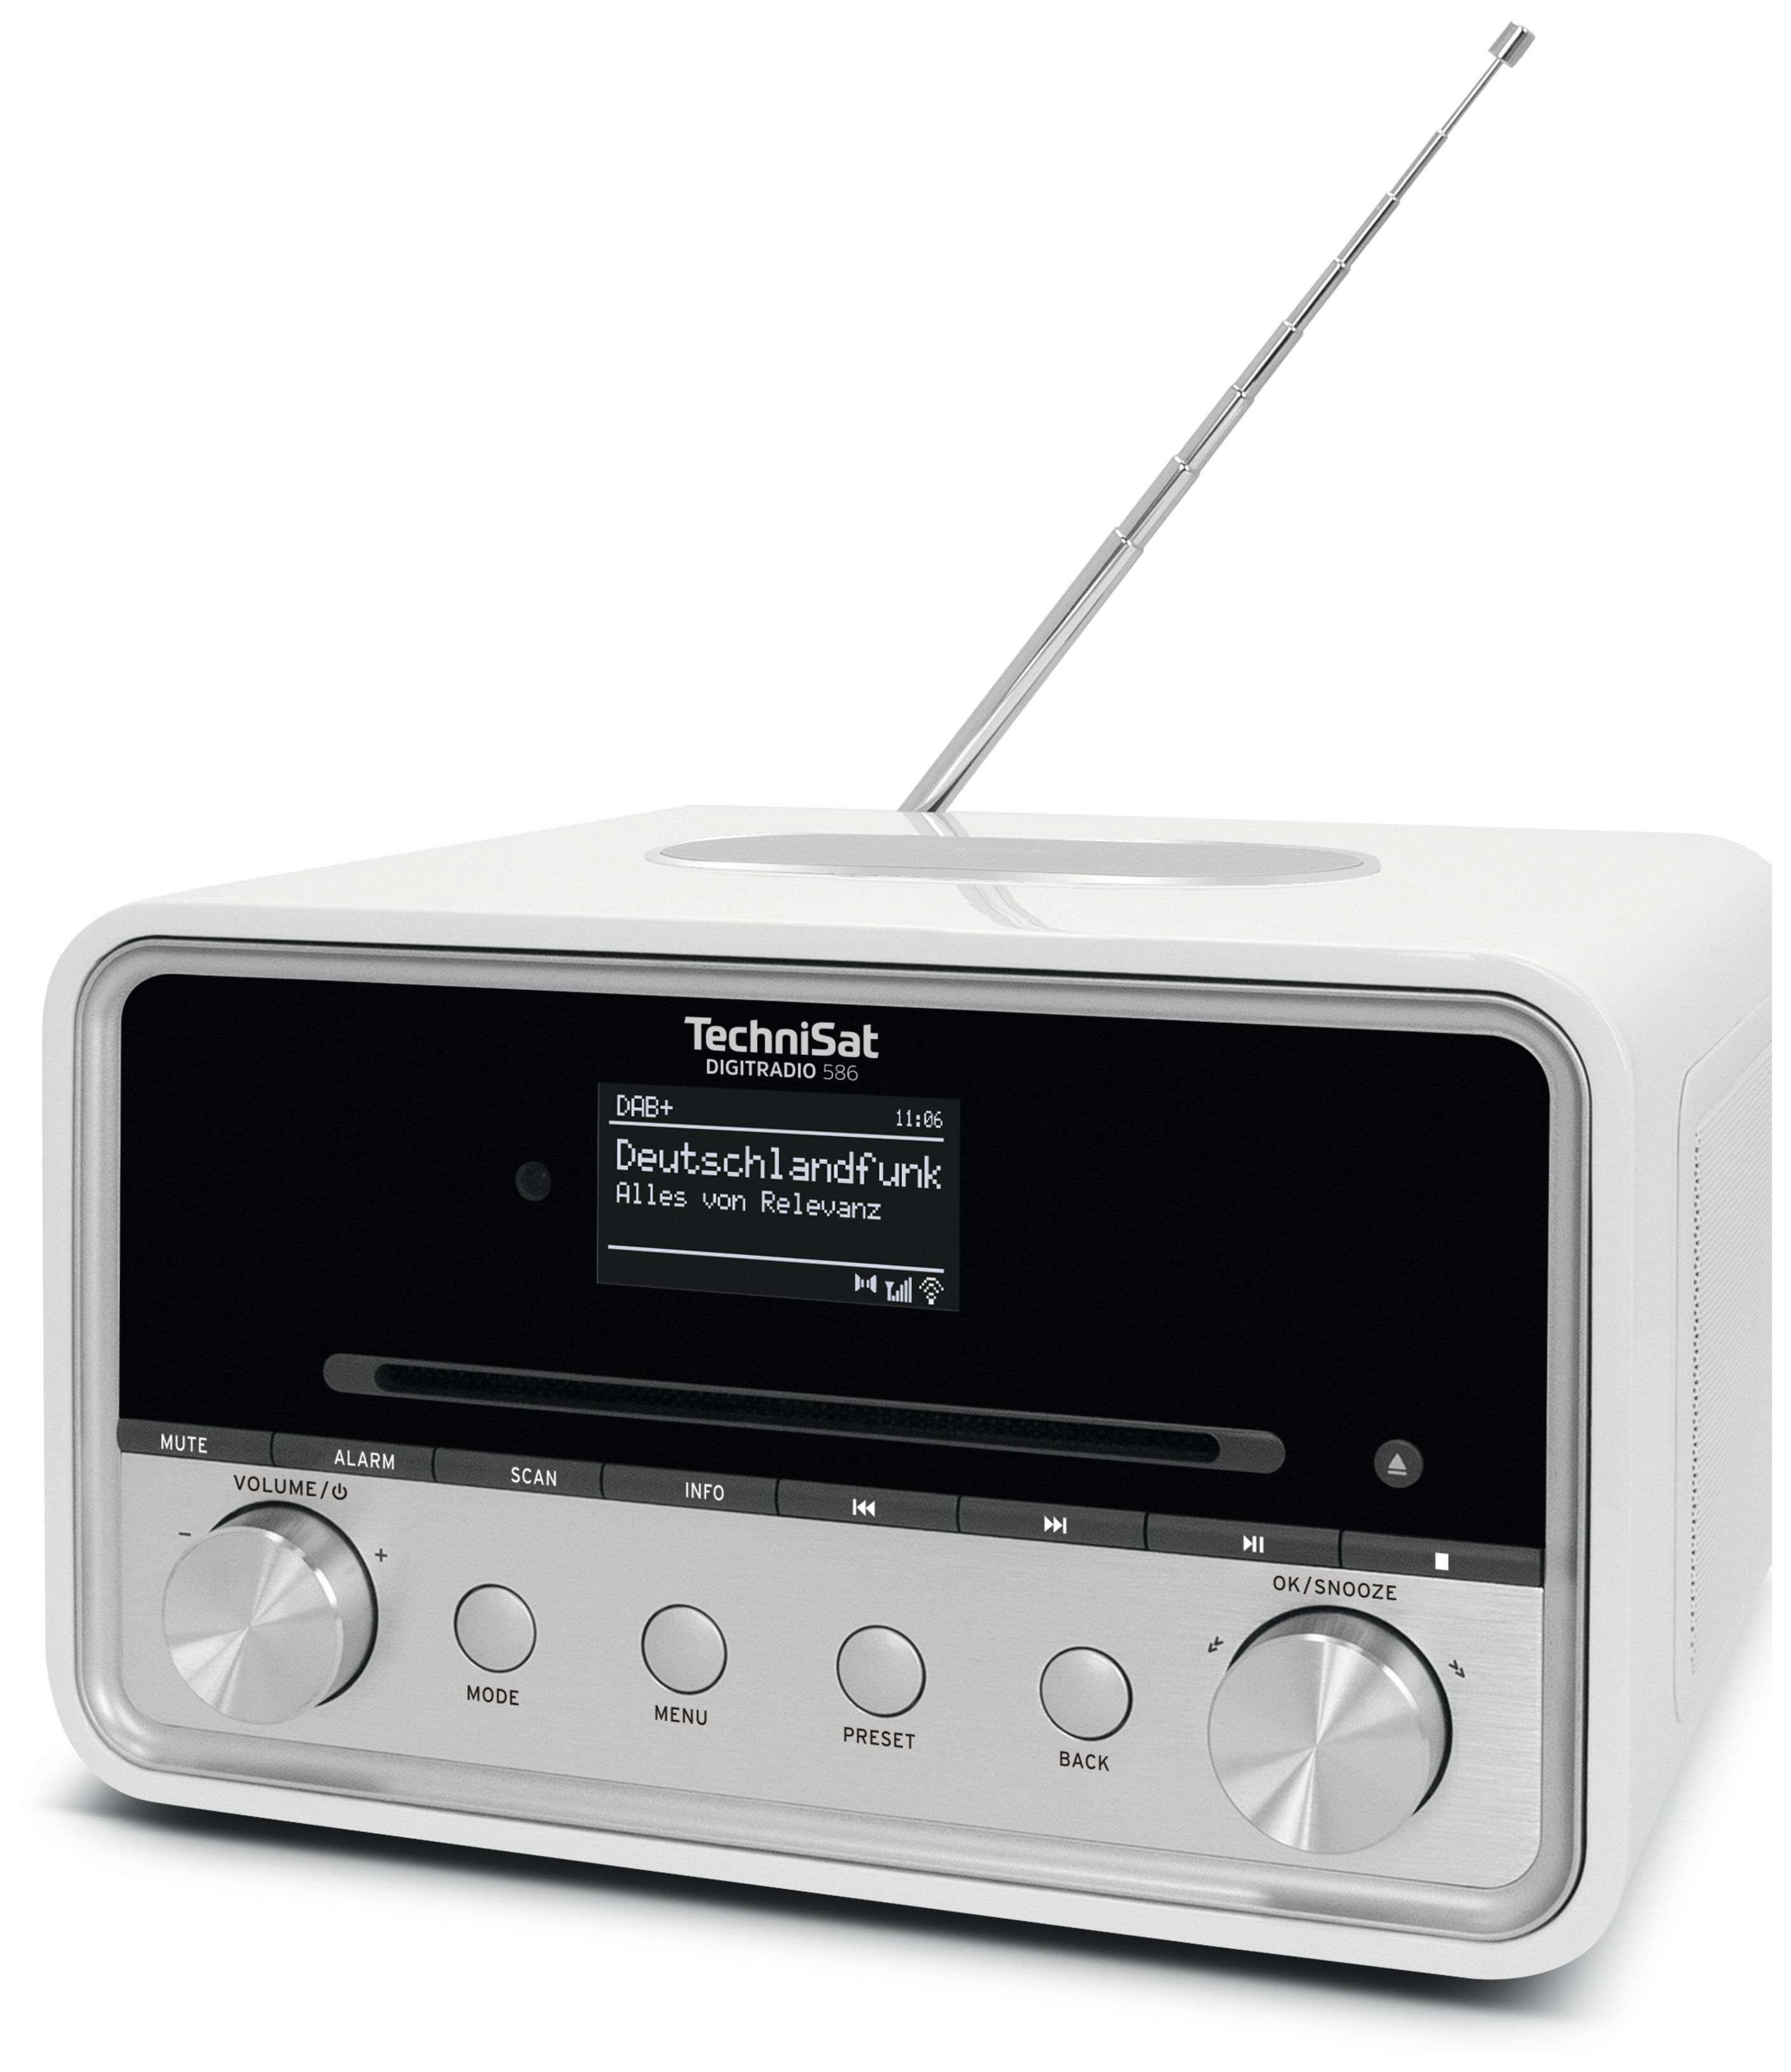 TechniSat Digitradio 586 Bluetooth DAB+, von FM Persönlich Technomarkt Radio expert (Weiß)